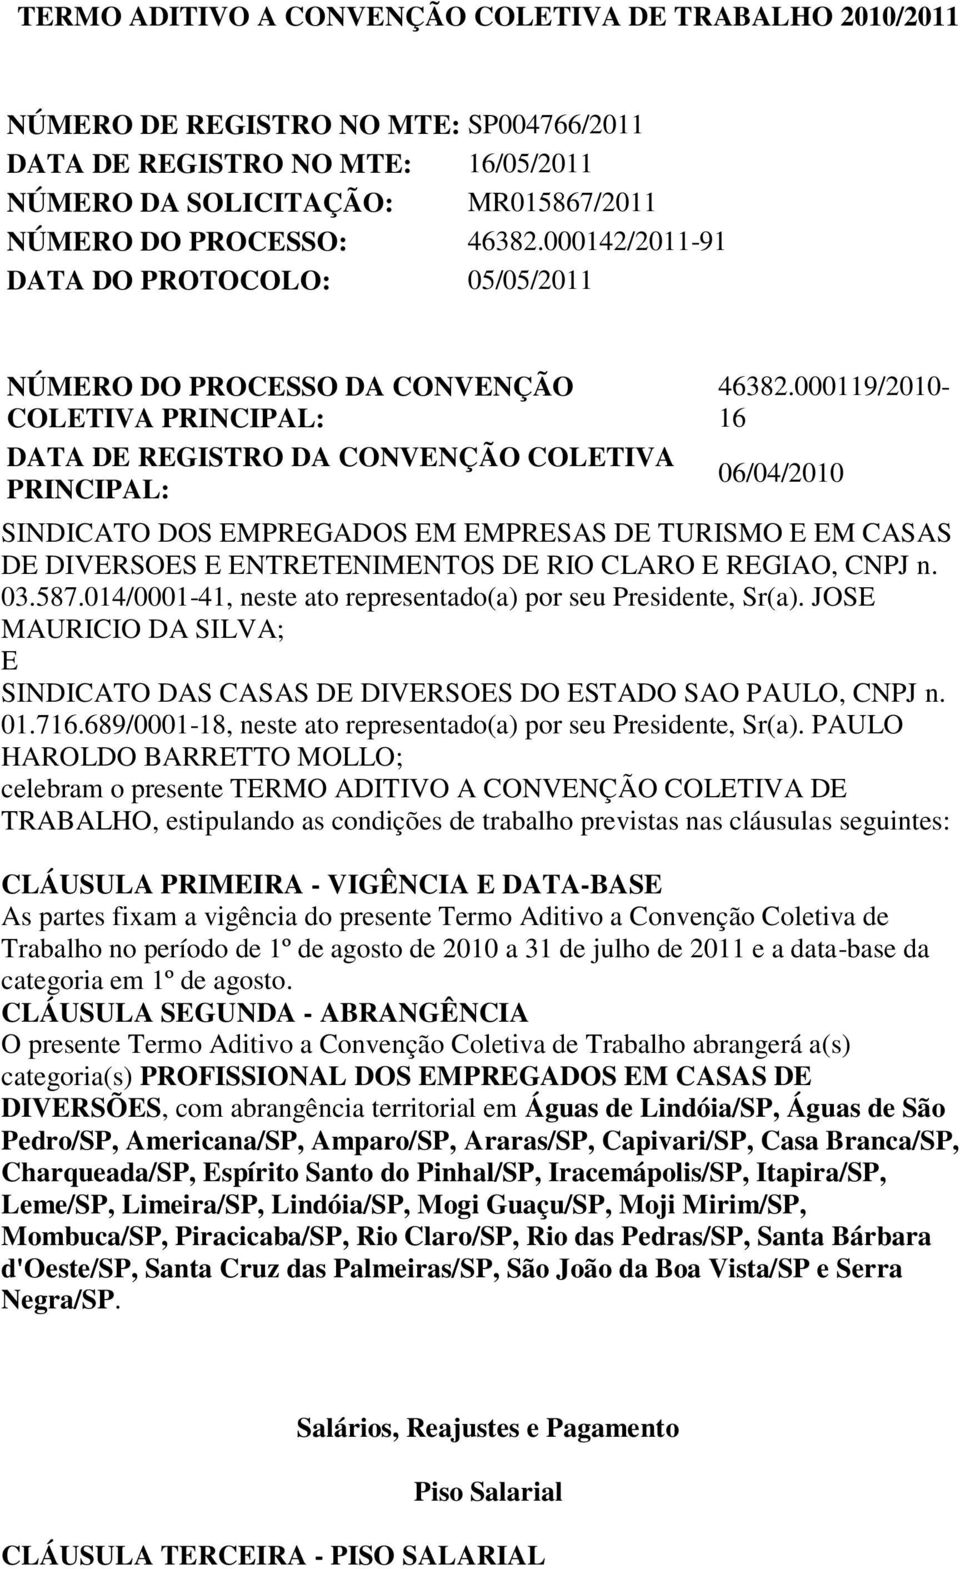 000119/2010-16 06/04/2010 SINDICATO DOS EMPREGADOS EM EMPRESAS DE TURISMO E EM CASAS DE DIVERSOES E ENTRETENIMENTOS DE RIO CLARO E REGIAO, CNPJ n. 03.587.